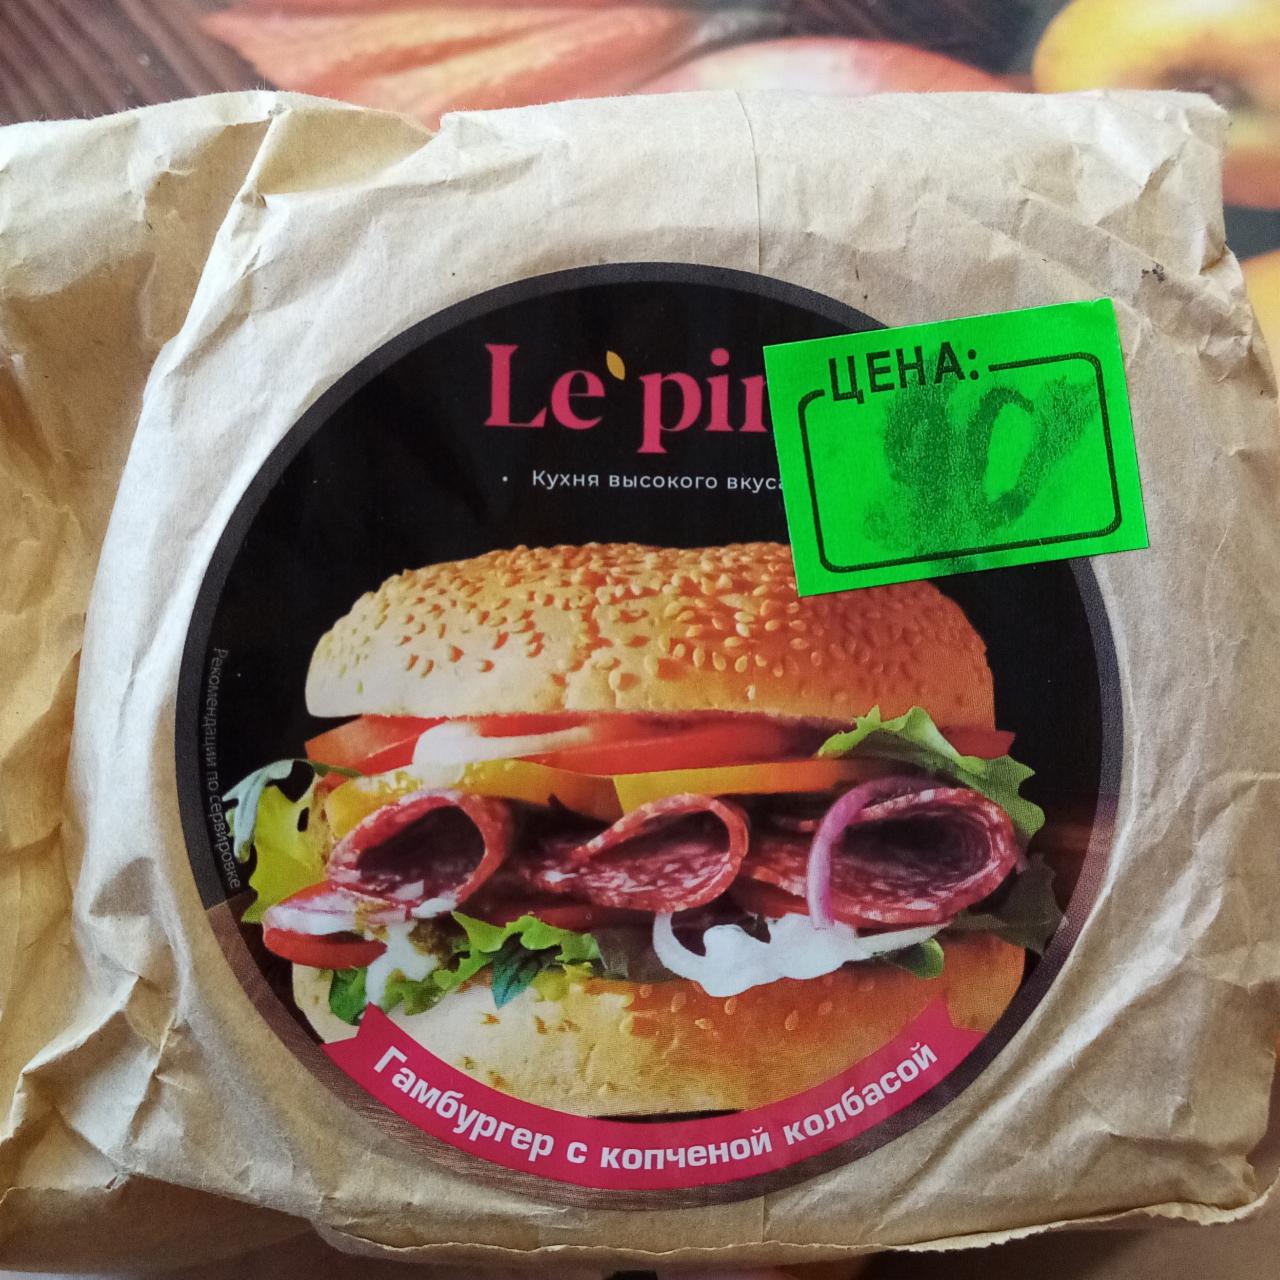 Фото - гамбургер с копченной колбасой Le pim